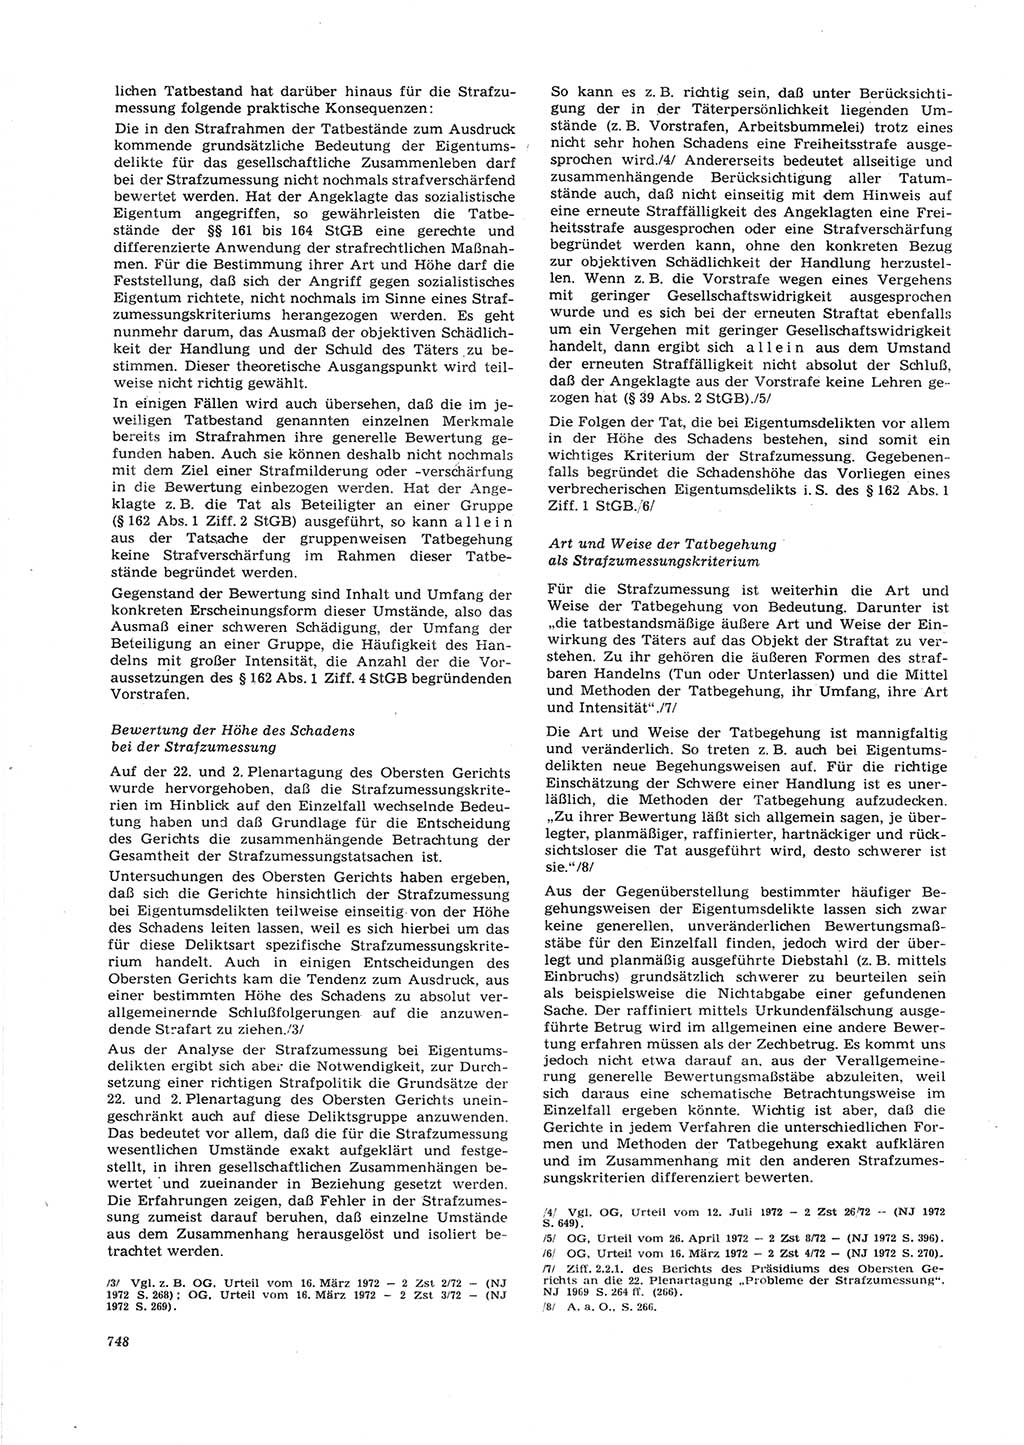 Neue Justiz (NJ), Zeitschrift für Recht und Rechtswissenschaft [Deutsche Demokratische Republik (DDR)], 26. Jahrgang 1972, Seite 748 (NJ DDR 1972, S. 748)